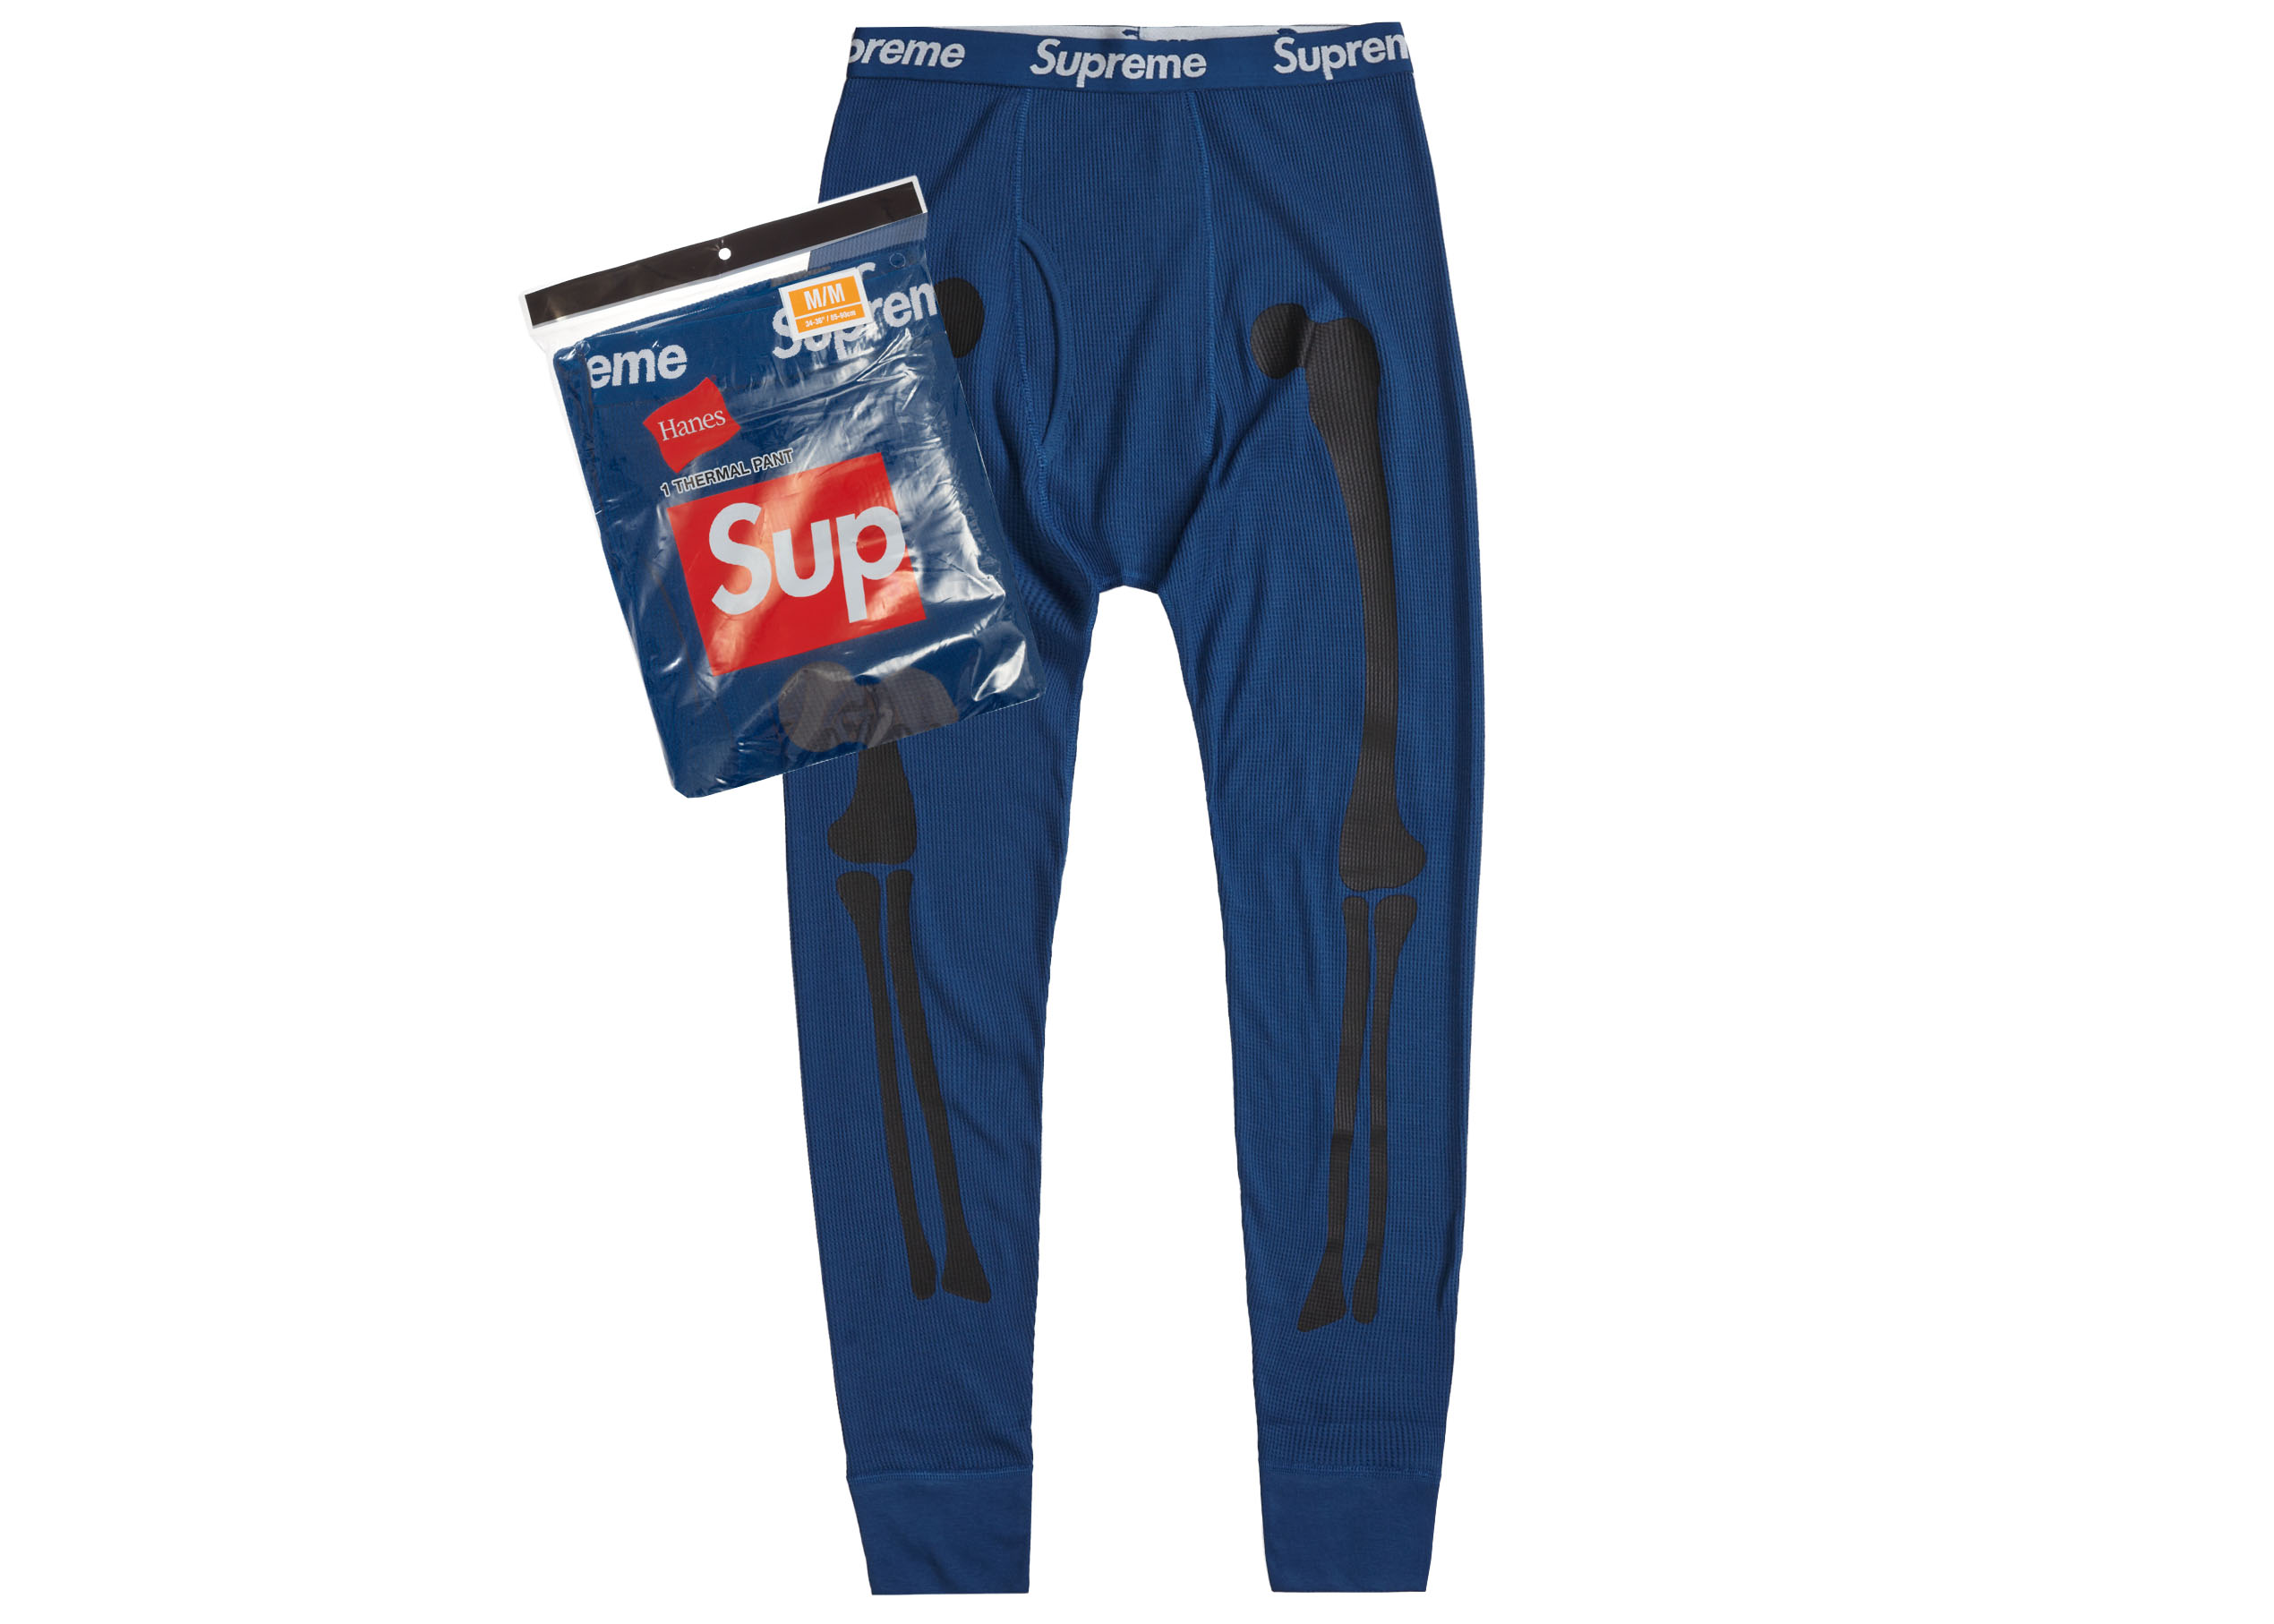 Supreme Hanes Bones Thermal Pant (1 Pack) Blue